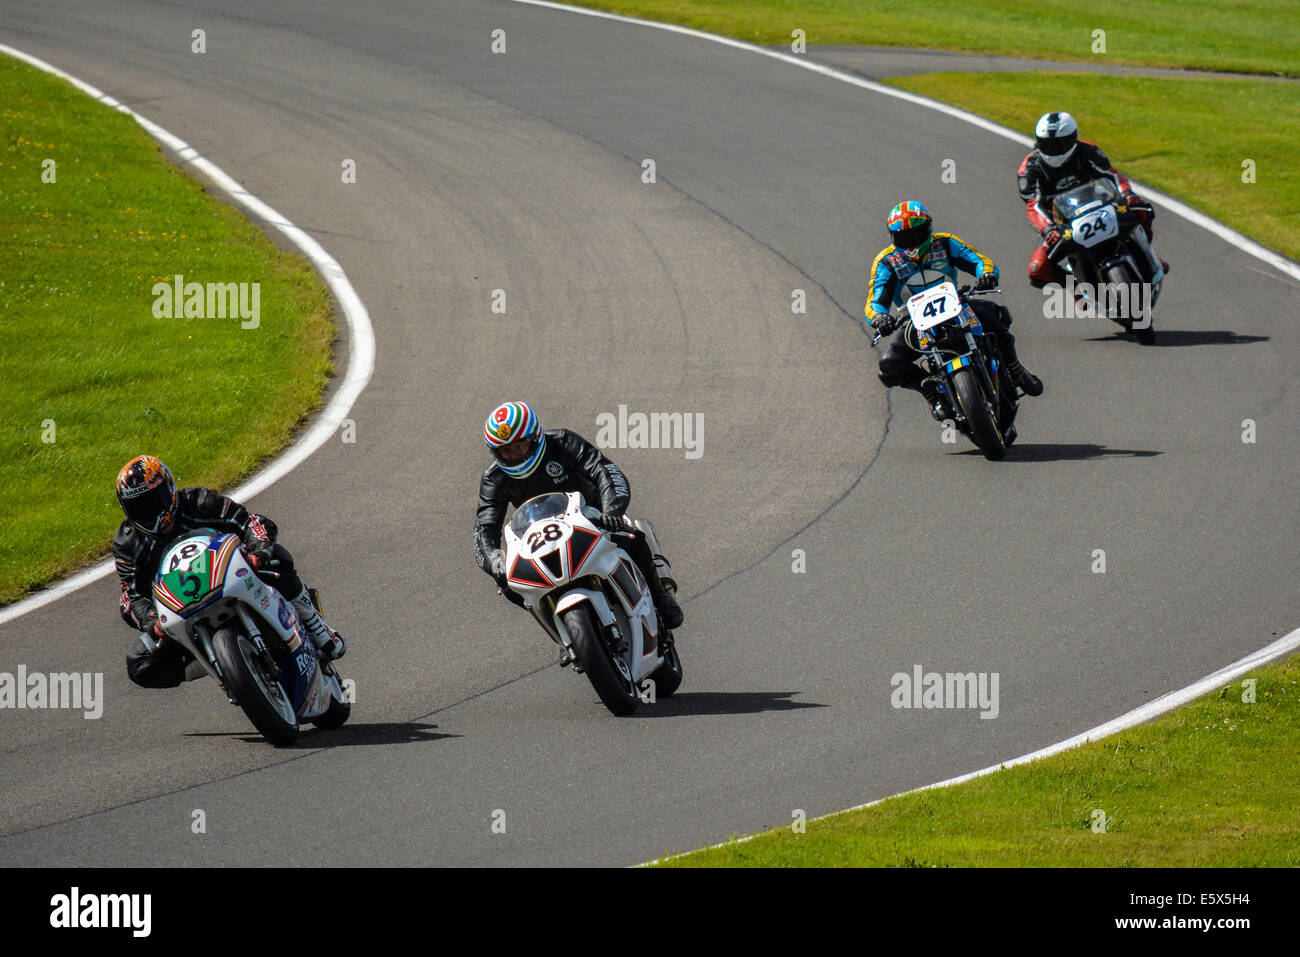 Motorbikes racing at Cadwell park Stock Photo